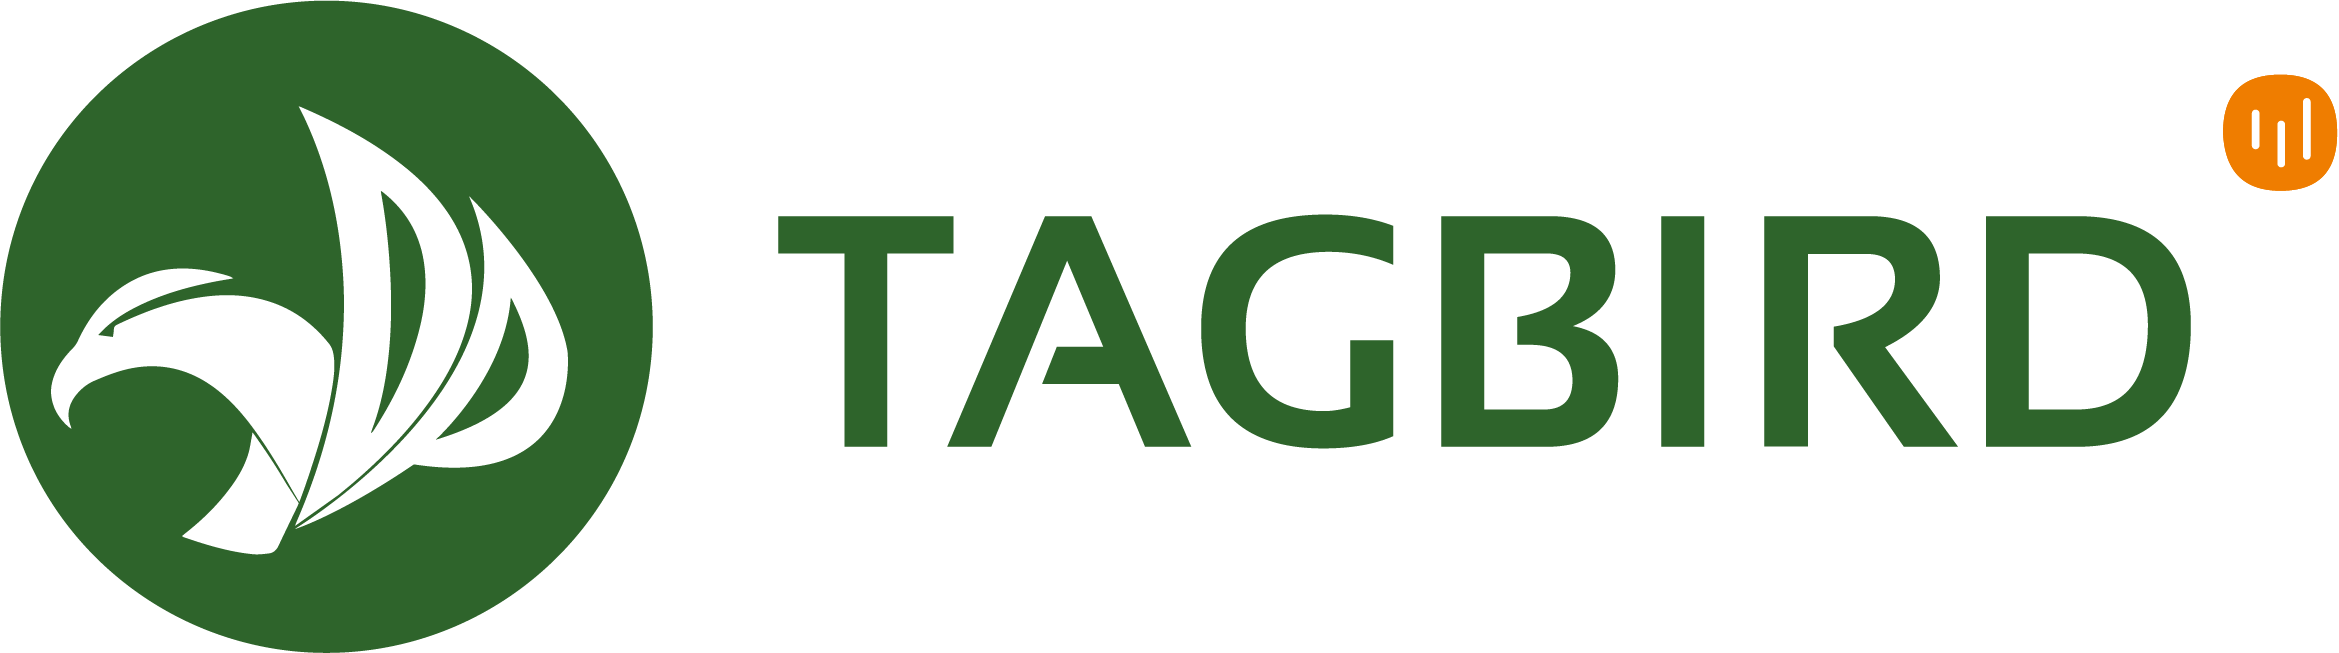 tagbird logo